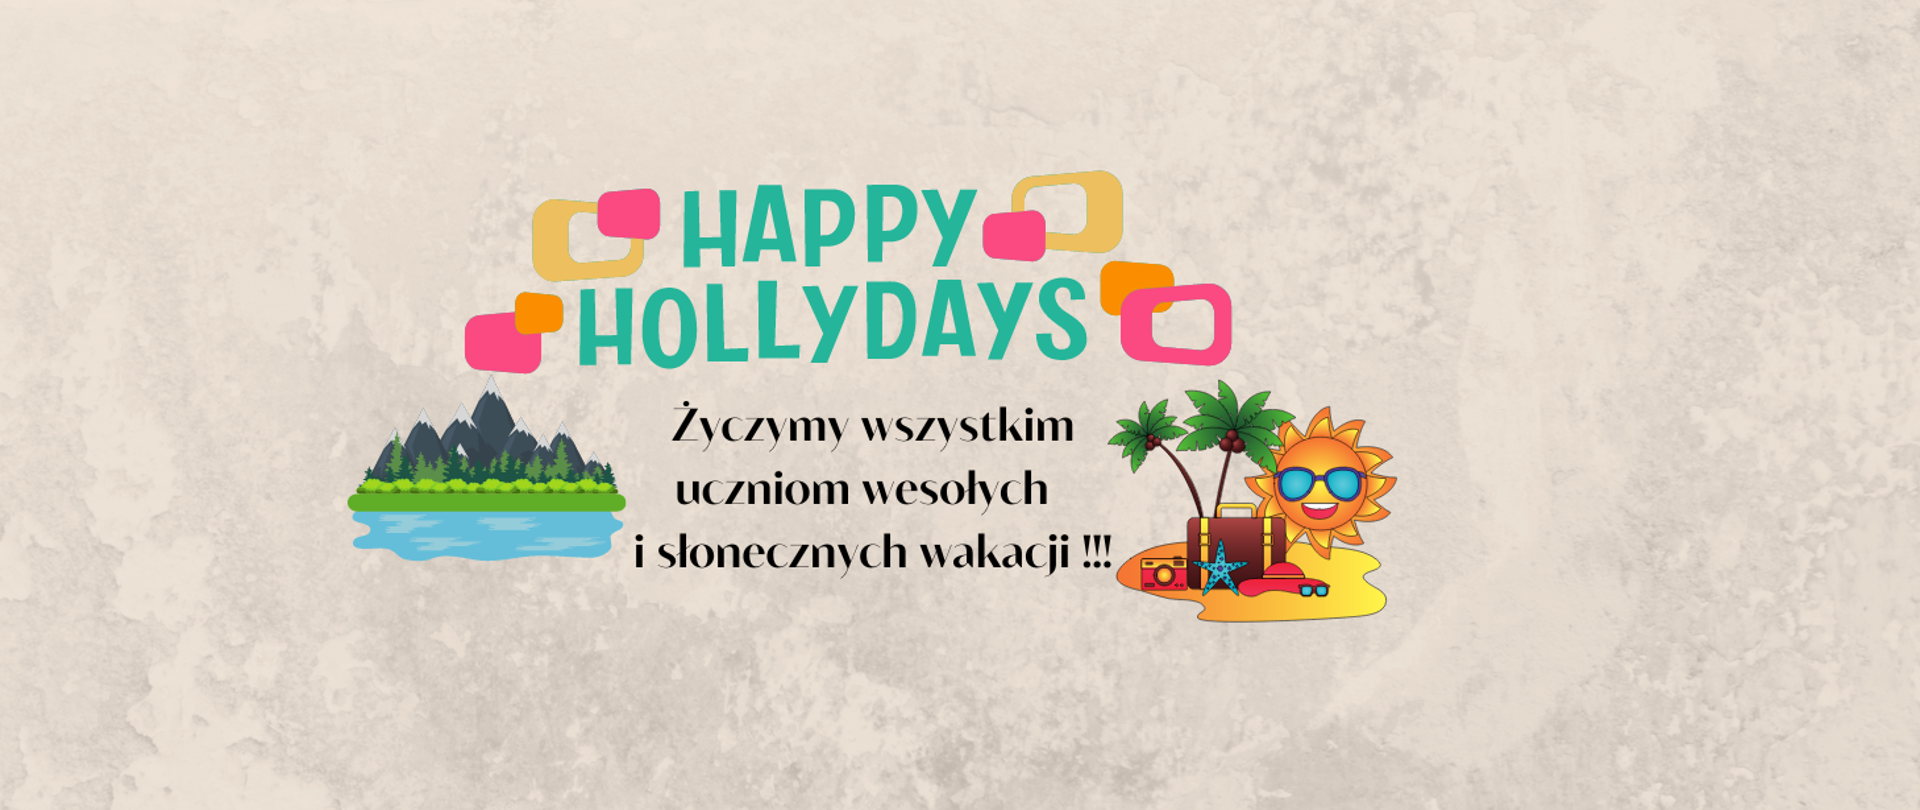 Grafika przedstawia kolorowy napis "happy hollydays" wraz z życzeniami oraz grafika gór i słońce.